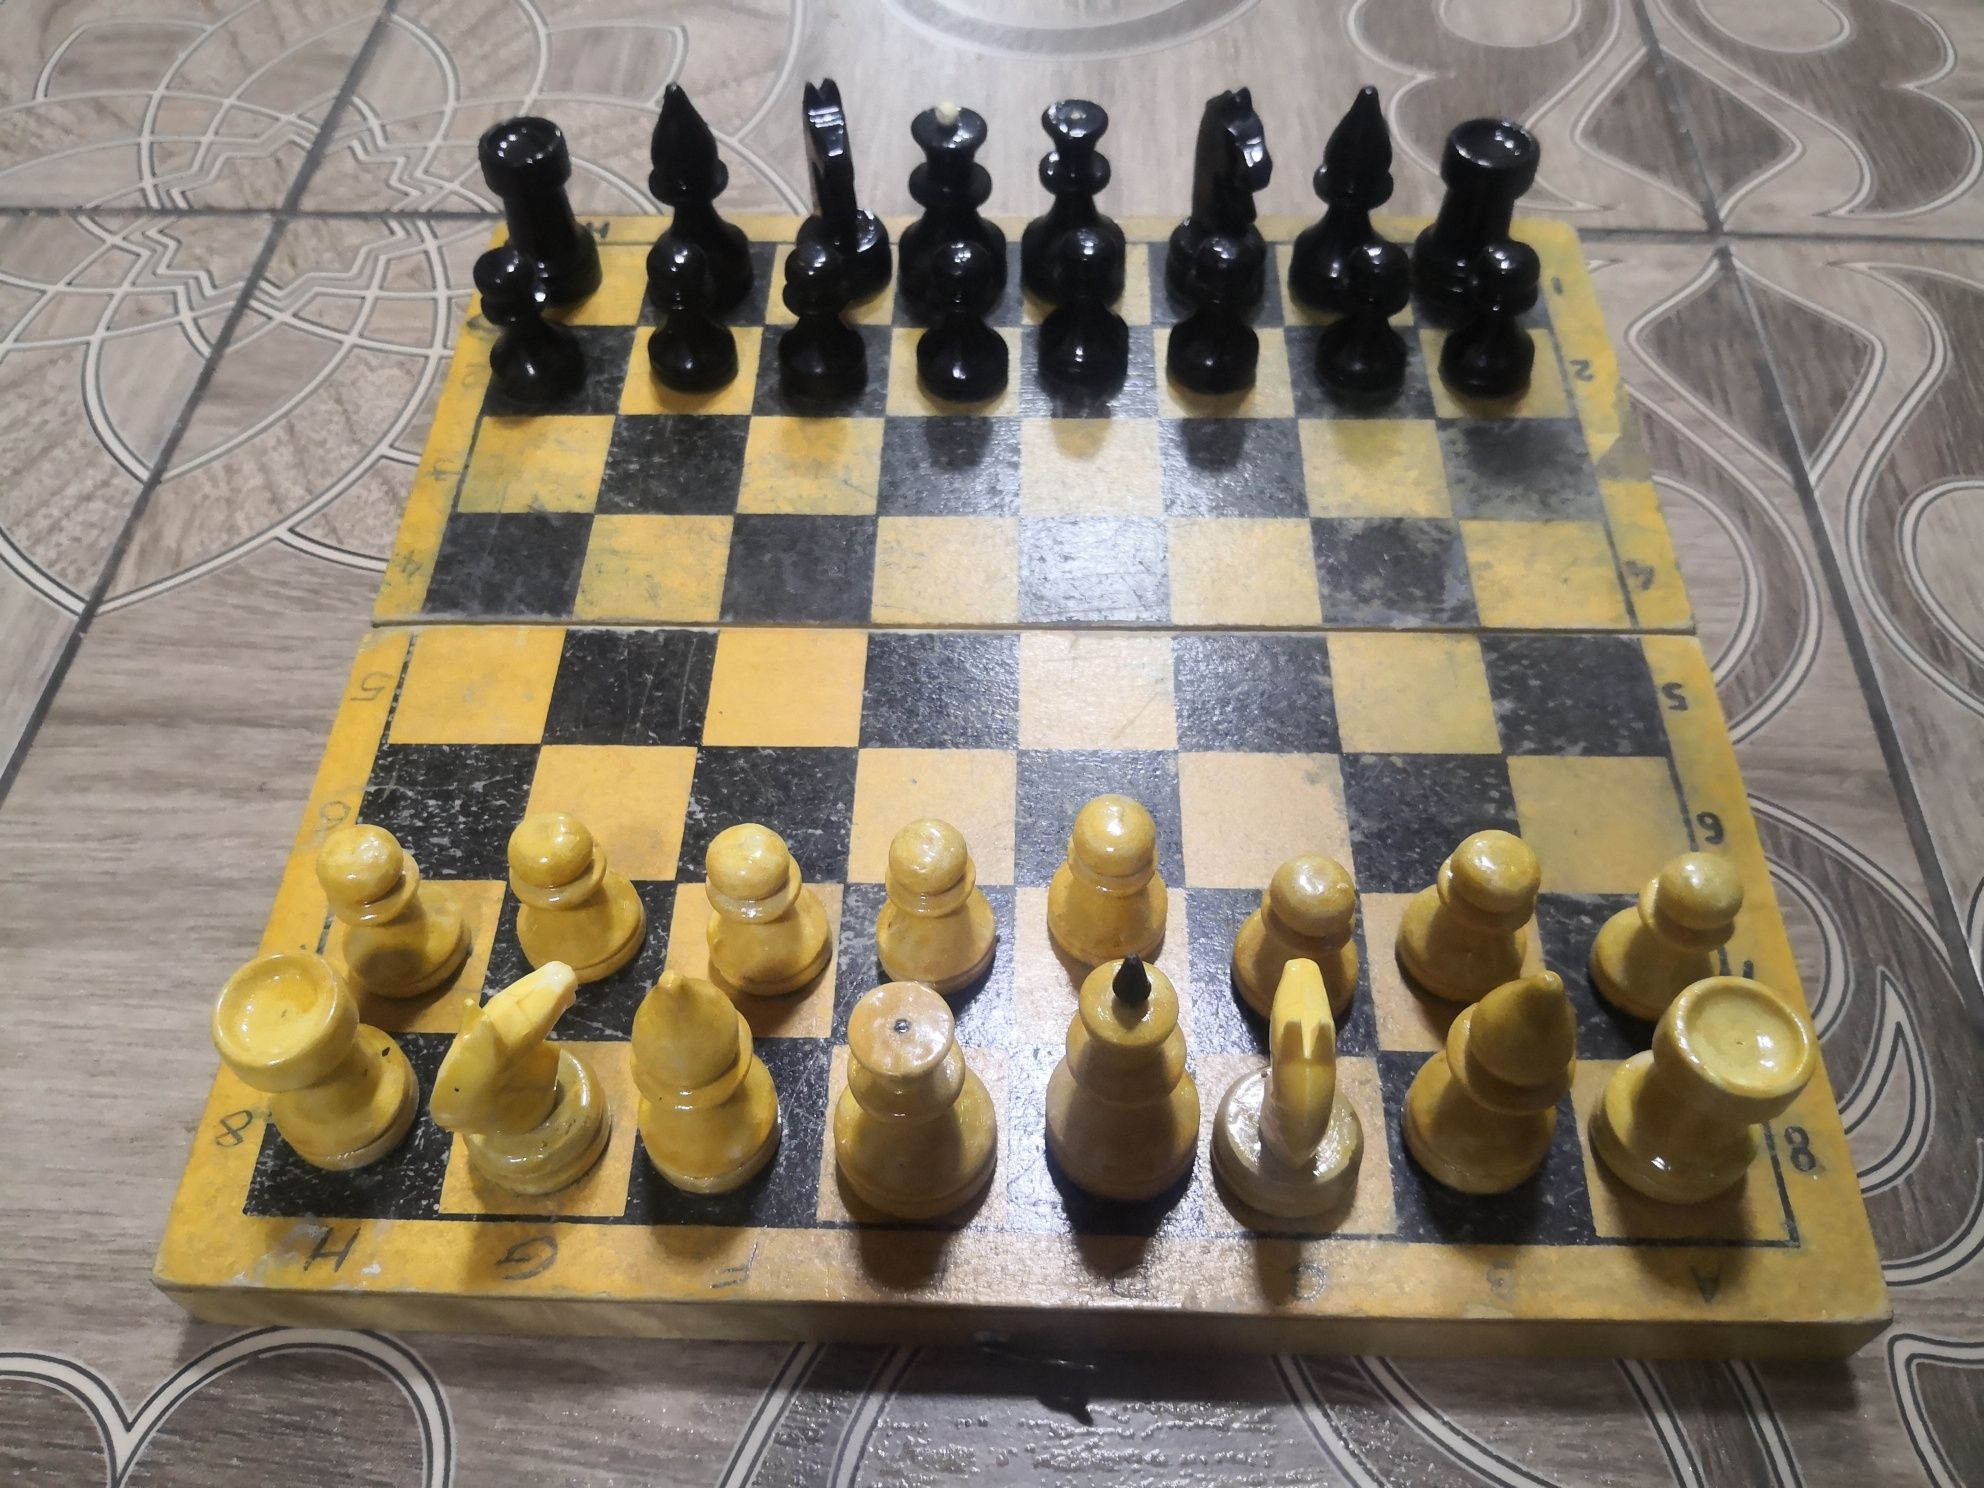 Шахматы игра для мышления, советский времен качество отличное.